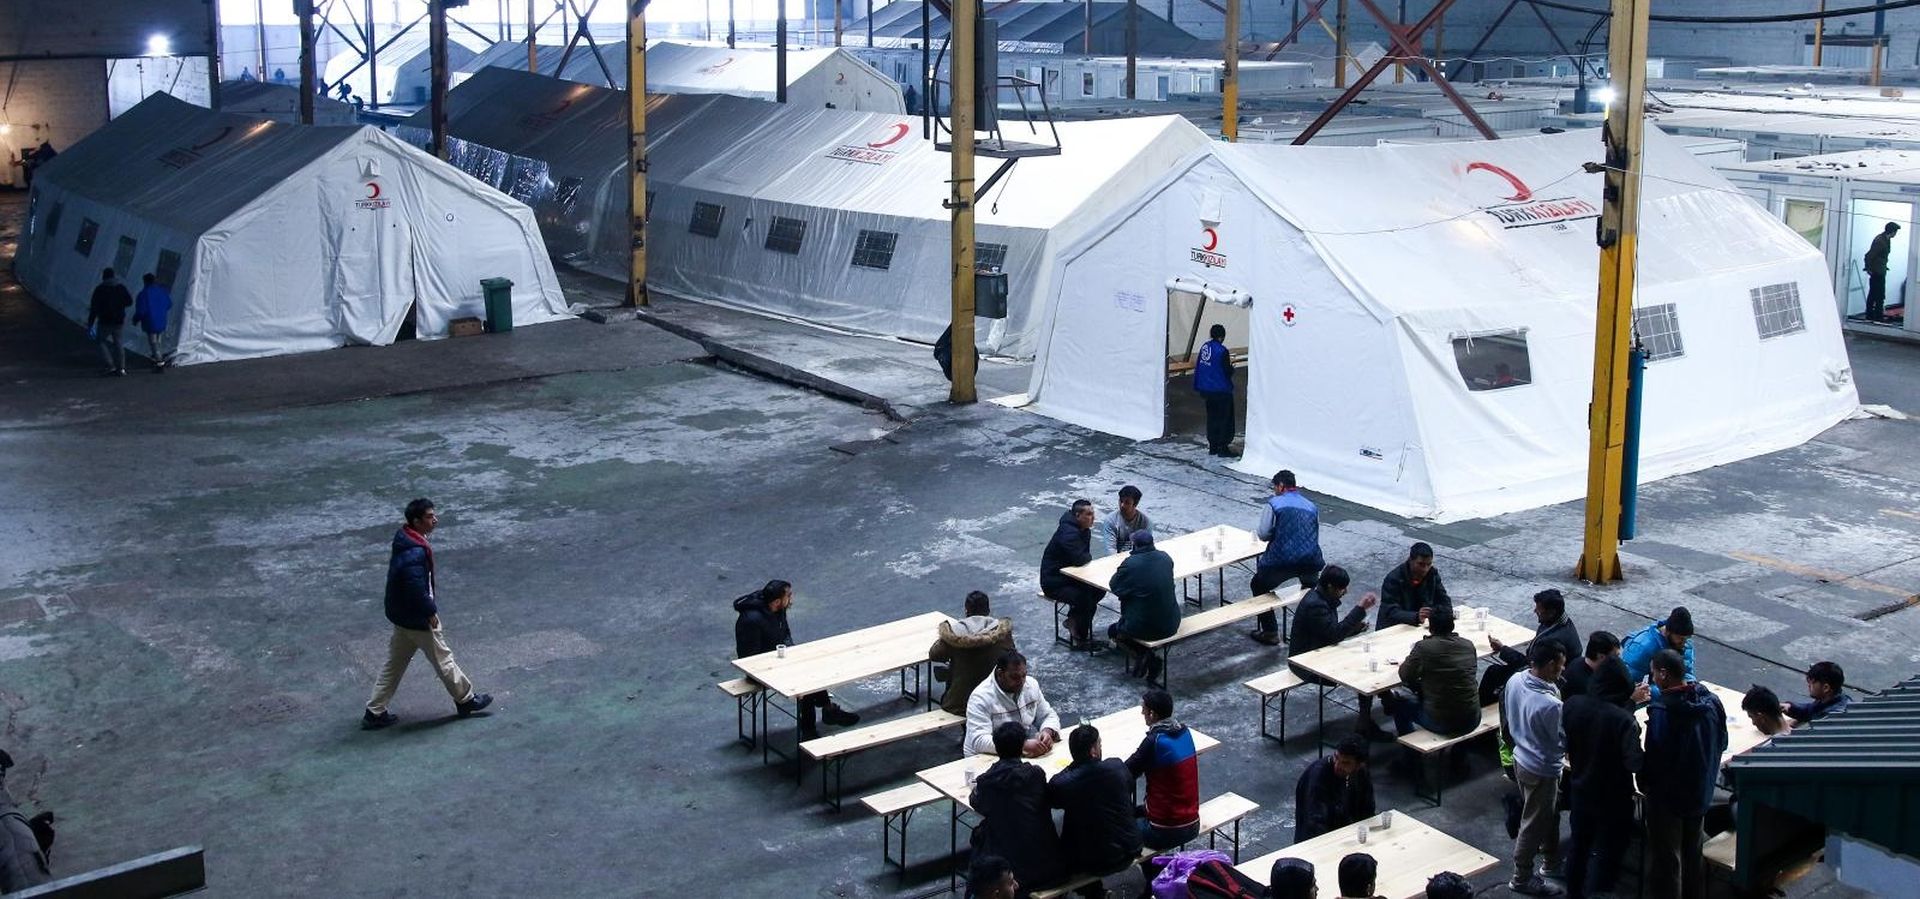 Bihać: Svakodnevni život migranata u prihvatnom centru Bira 21.02.2019., Bihac, Bosna i Hercegovina - U prihvatnom centru "Bira" u Bihacu smjesteno je oko 2000 migranata. U Biri su za migrante osigurani satori i kontejneri prilagodjeni za zimske uvjete. Odmah po dolasku obavlja se lijecnicki pregled, a osigurana su im tri obroka dnevno, deke, higijenske i druge potrepstine. Migrantima je napravljen i mesdzid, mjesto gdje se mogu moliti.

Photo: Armin Durgut/PIXSELL